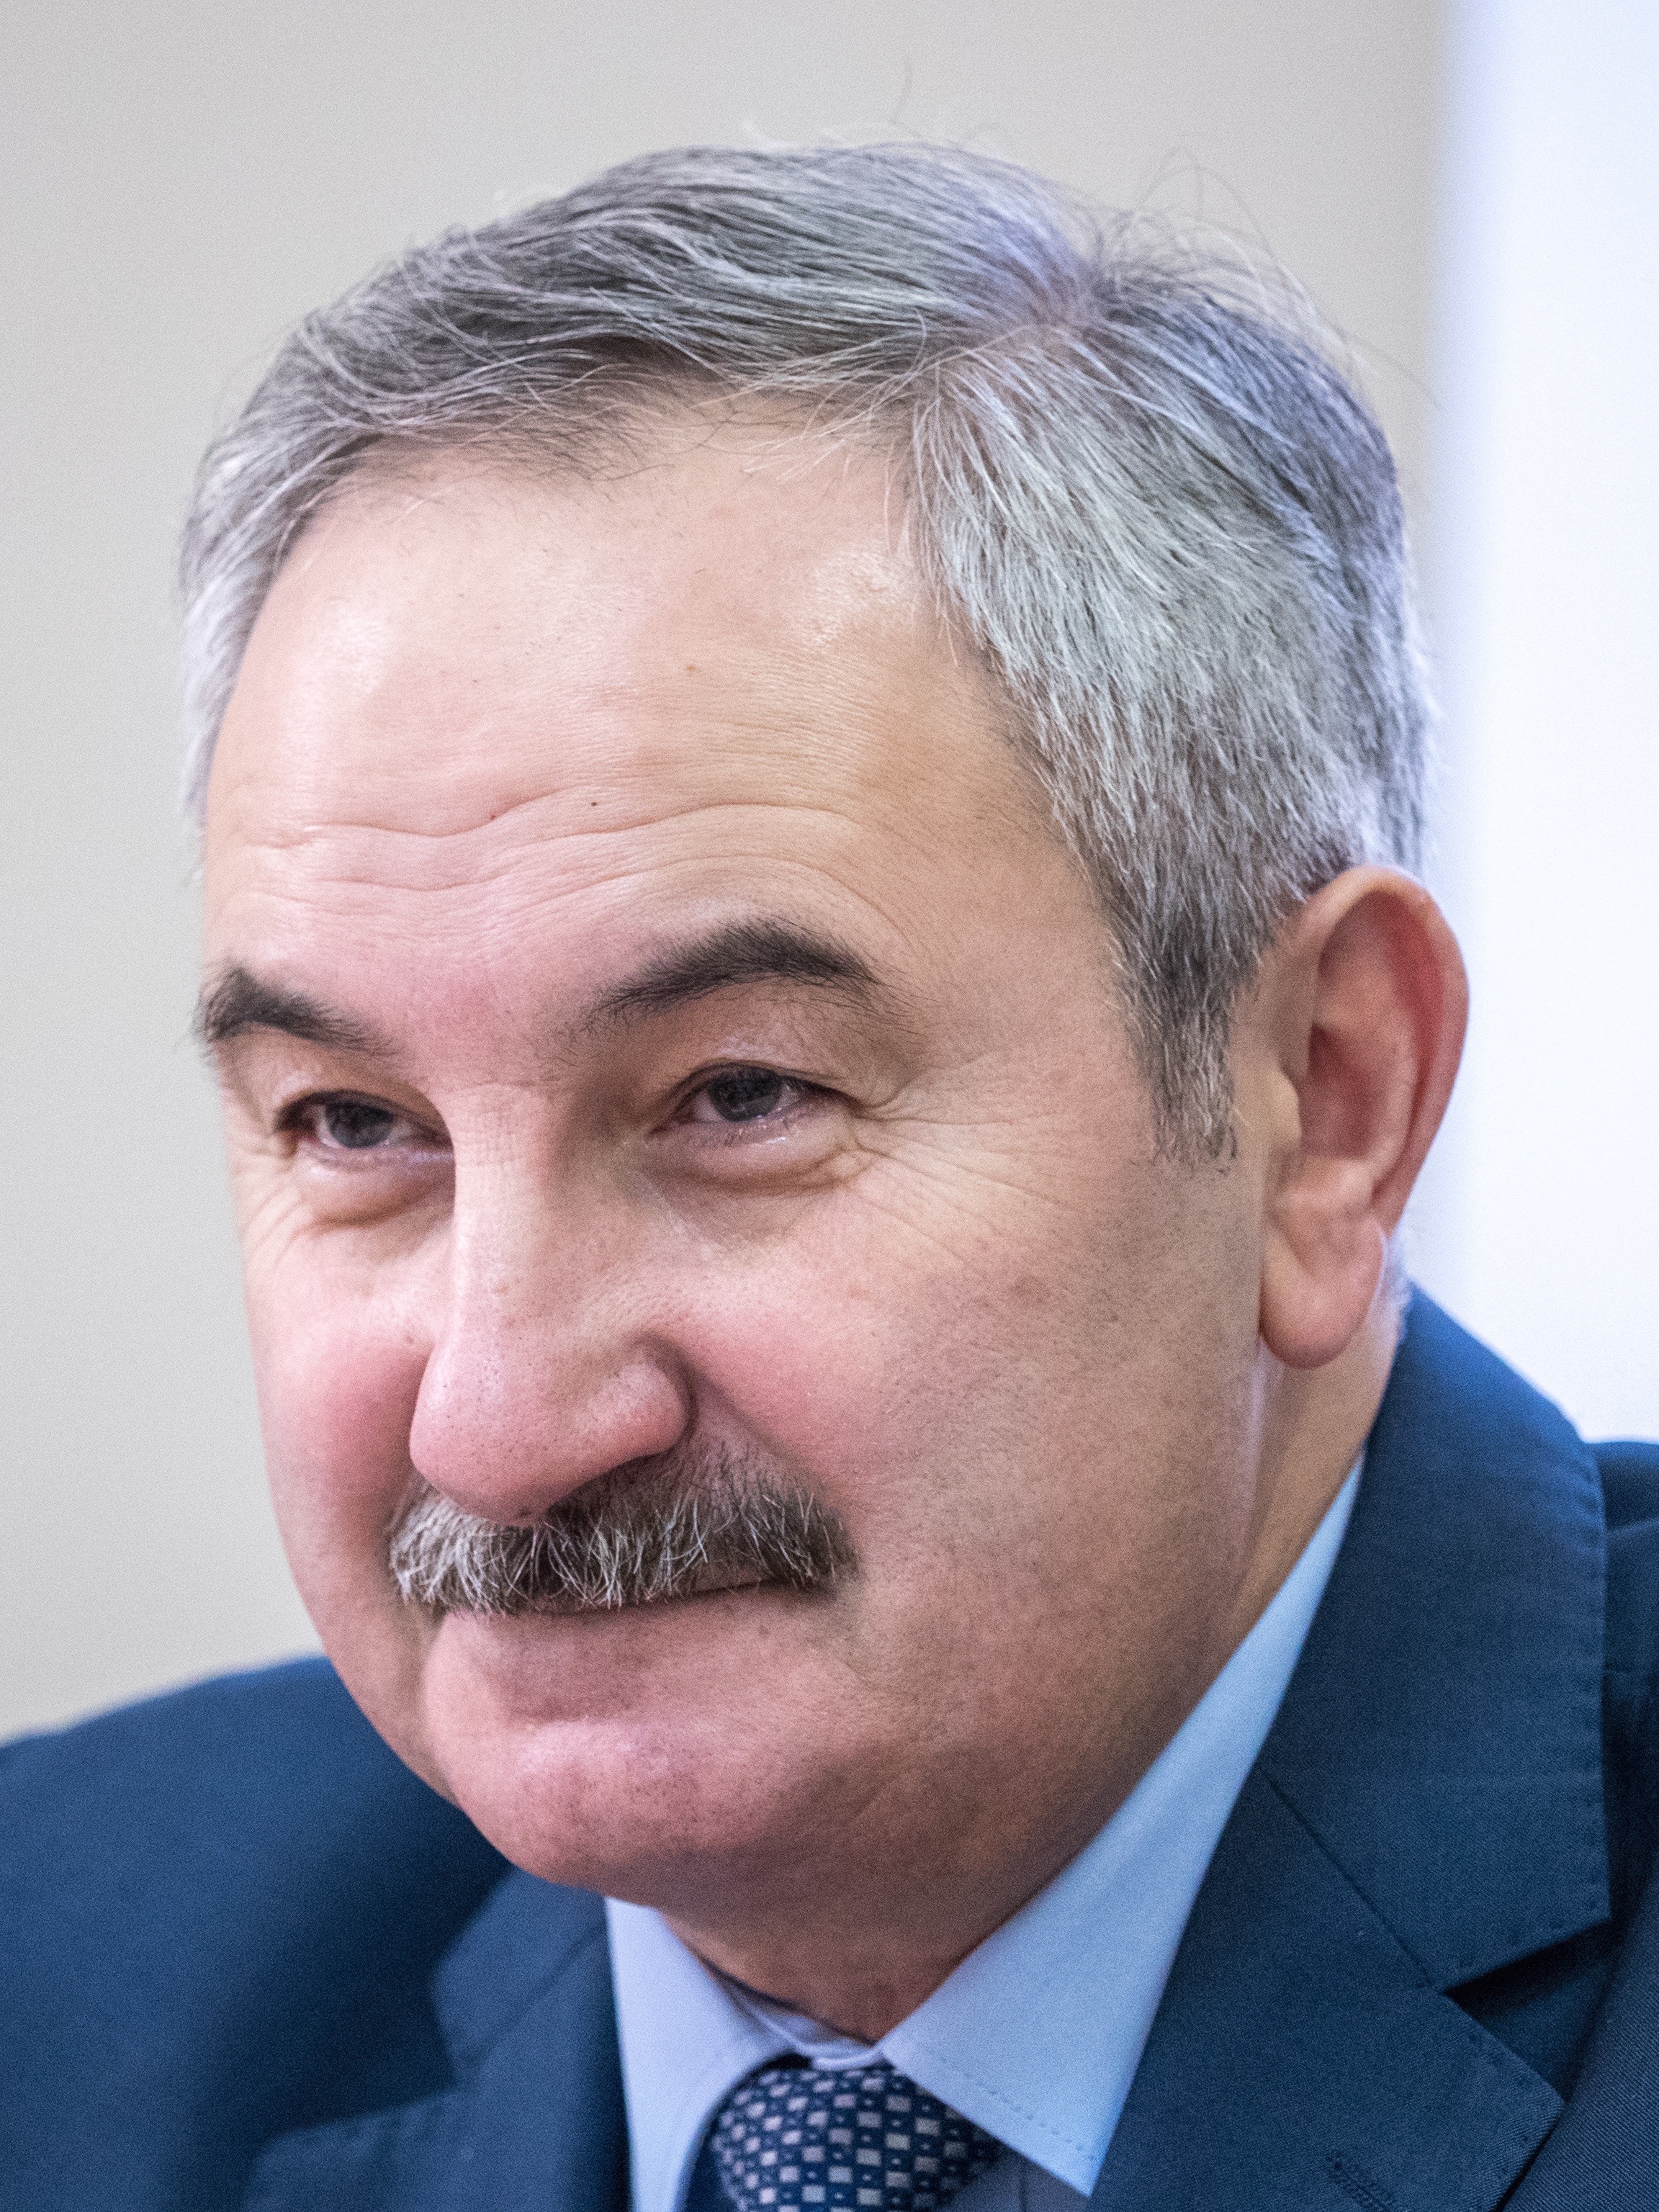 Качаев Эльгиз Идрисович — Председатель Комитета по развитию предпринимательства и потребительского рынка Санкт-Петербурга